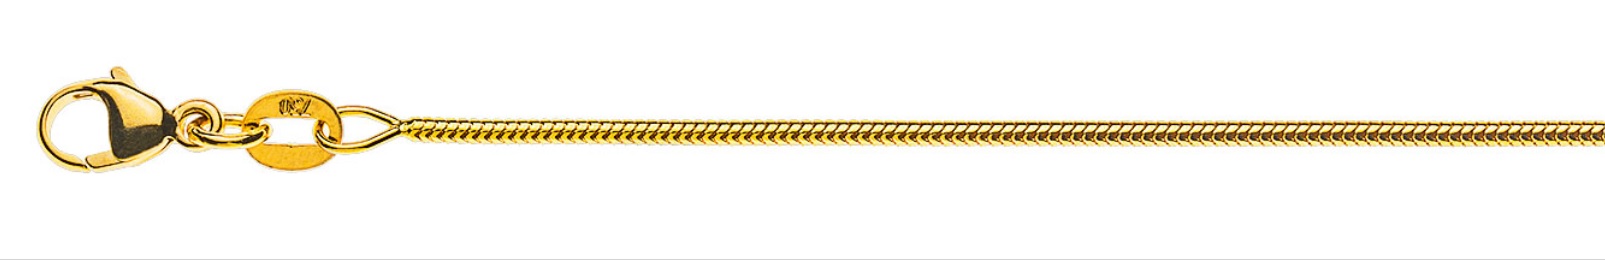 AURONOS Prestige Halskette Gelbgold 18K Schlangenkette 42cm 1.2mm